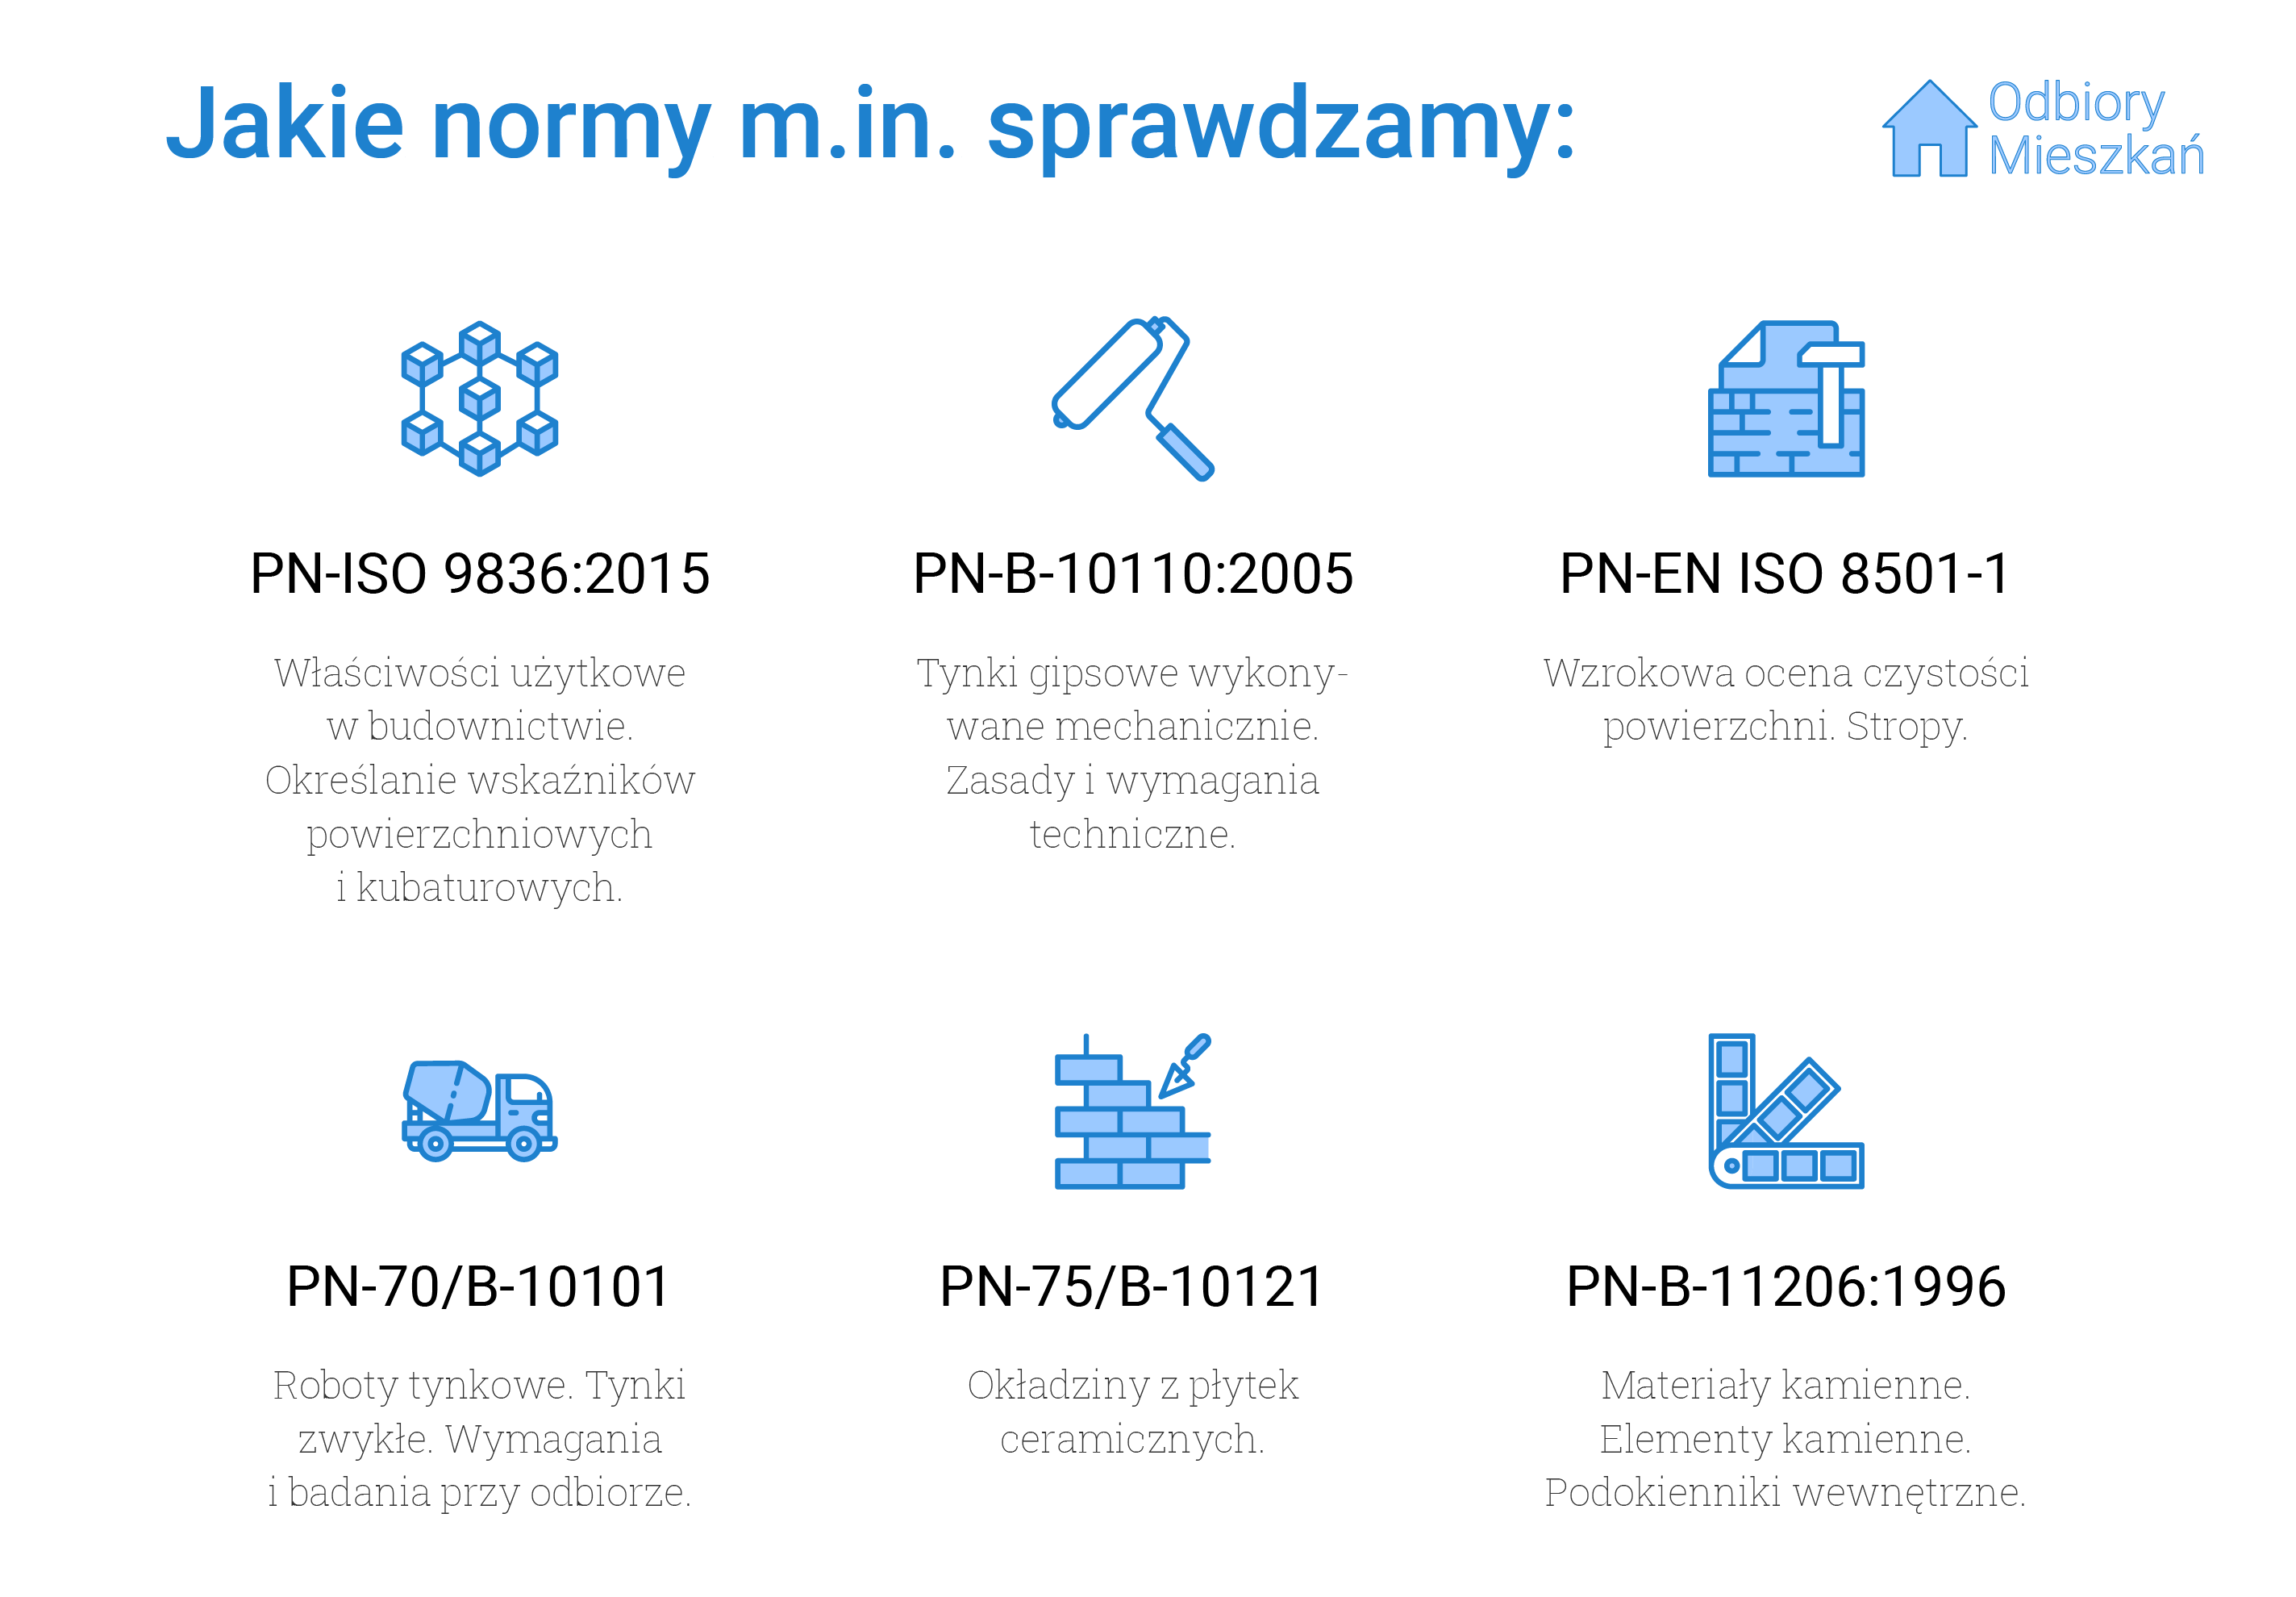 Normy, jakie sprawdzamy podczas odbioru technicznego w Krakowie: PN-ISO 9836:2015 - właściwości użytkowe w budownictwie i określanie wskaźników powierzchni kubaturowych, PN-B-10110:2005 - tynki gipsowe wykonywane mechanicznie oraz zasady i wymagania techniczne wykonywania tynków, PN-EN ISO 8501-1, czyli wzrokowa ocena czystości powierzchni oraz stropy, PN-70/B-10101 - roboty tynkowe, tynki zwykłe oraz wymagania przy odbiorze tynków, PN-75/B10121, czyli okładziny z płytek ceramicznych oraz PN-B-11206:1996, czyli materiały i elementy kamienne oraz podokienniki wewnętrzne.